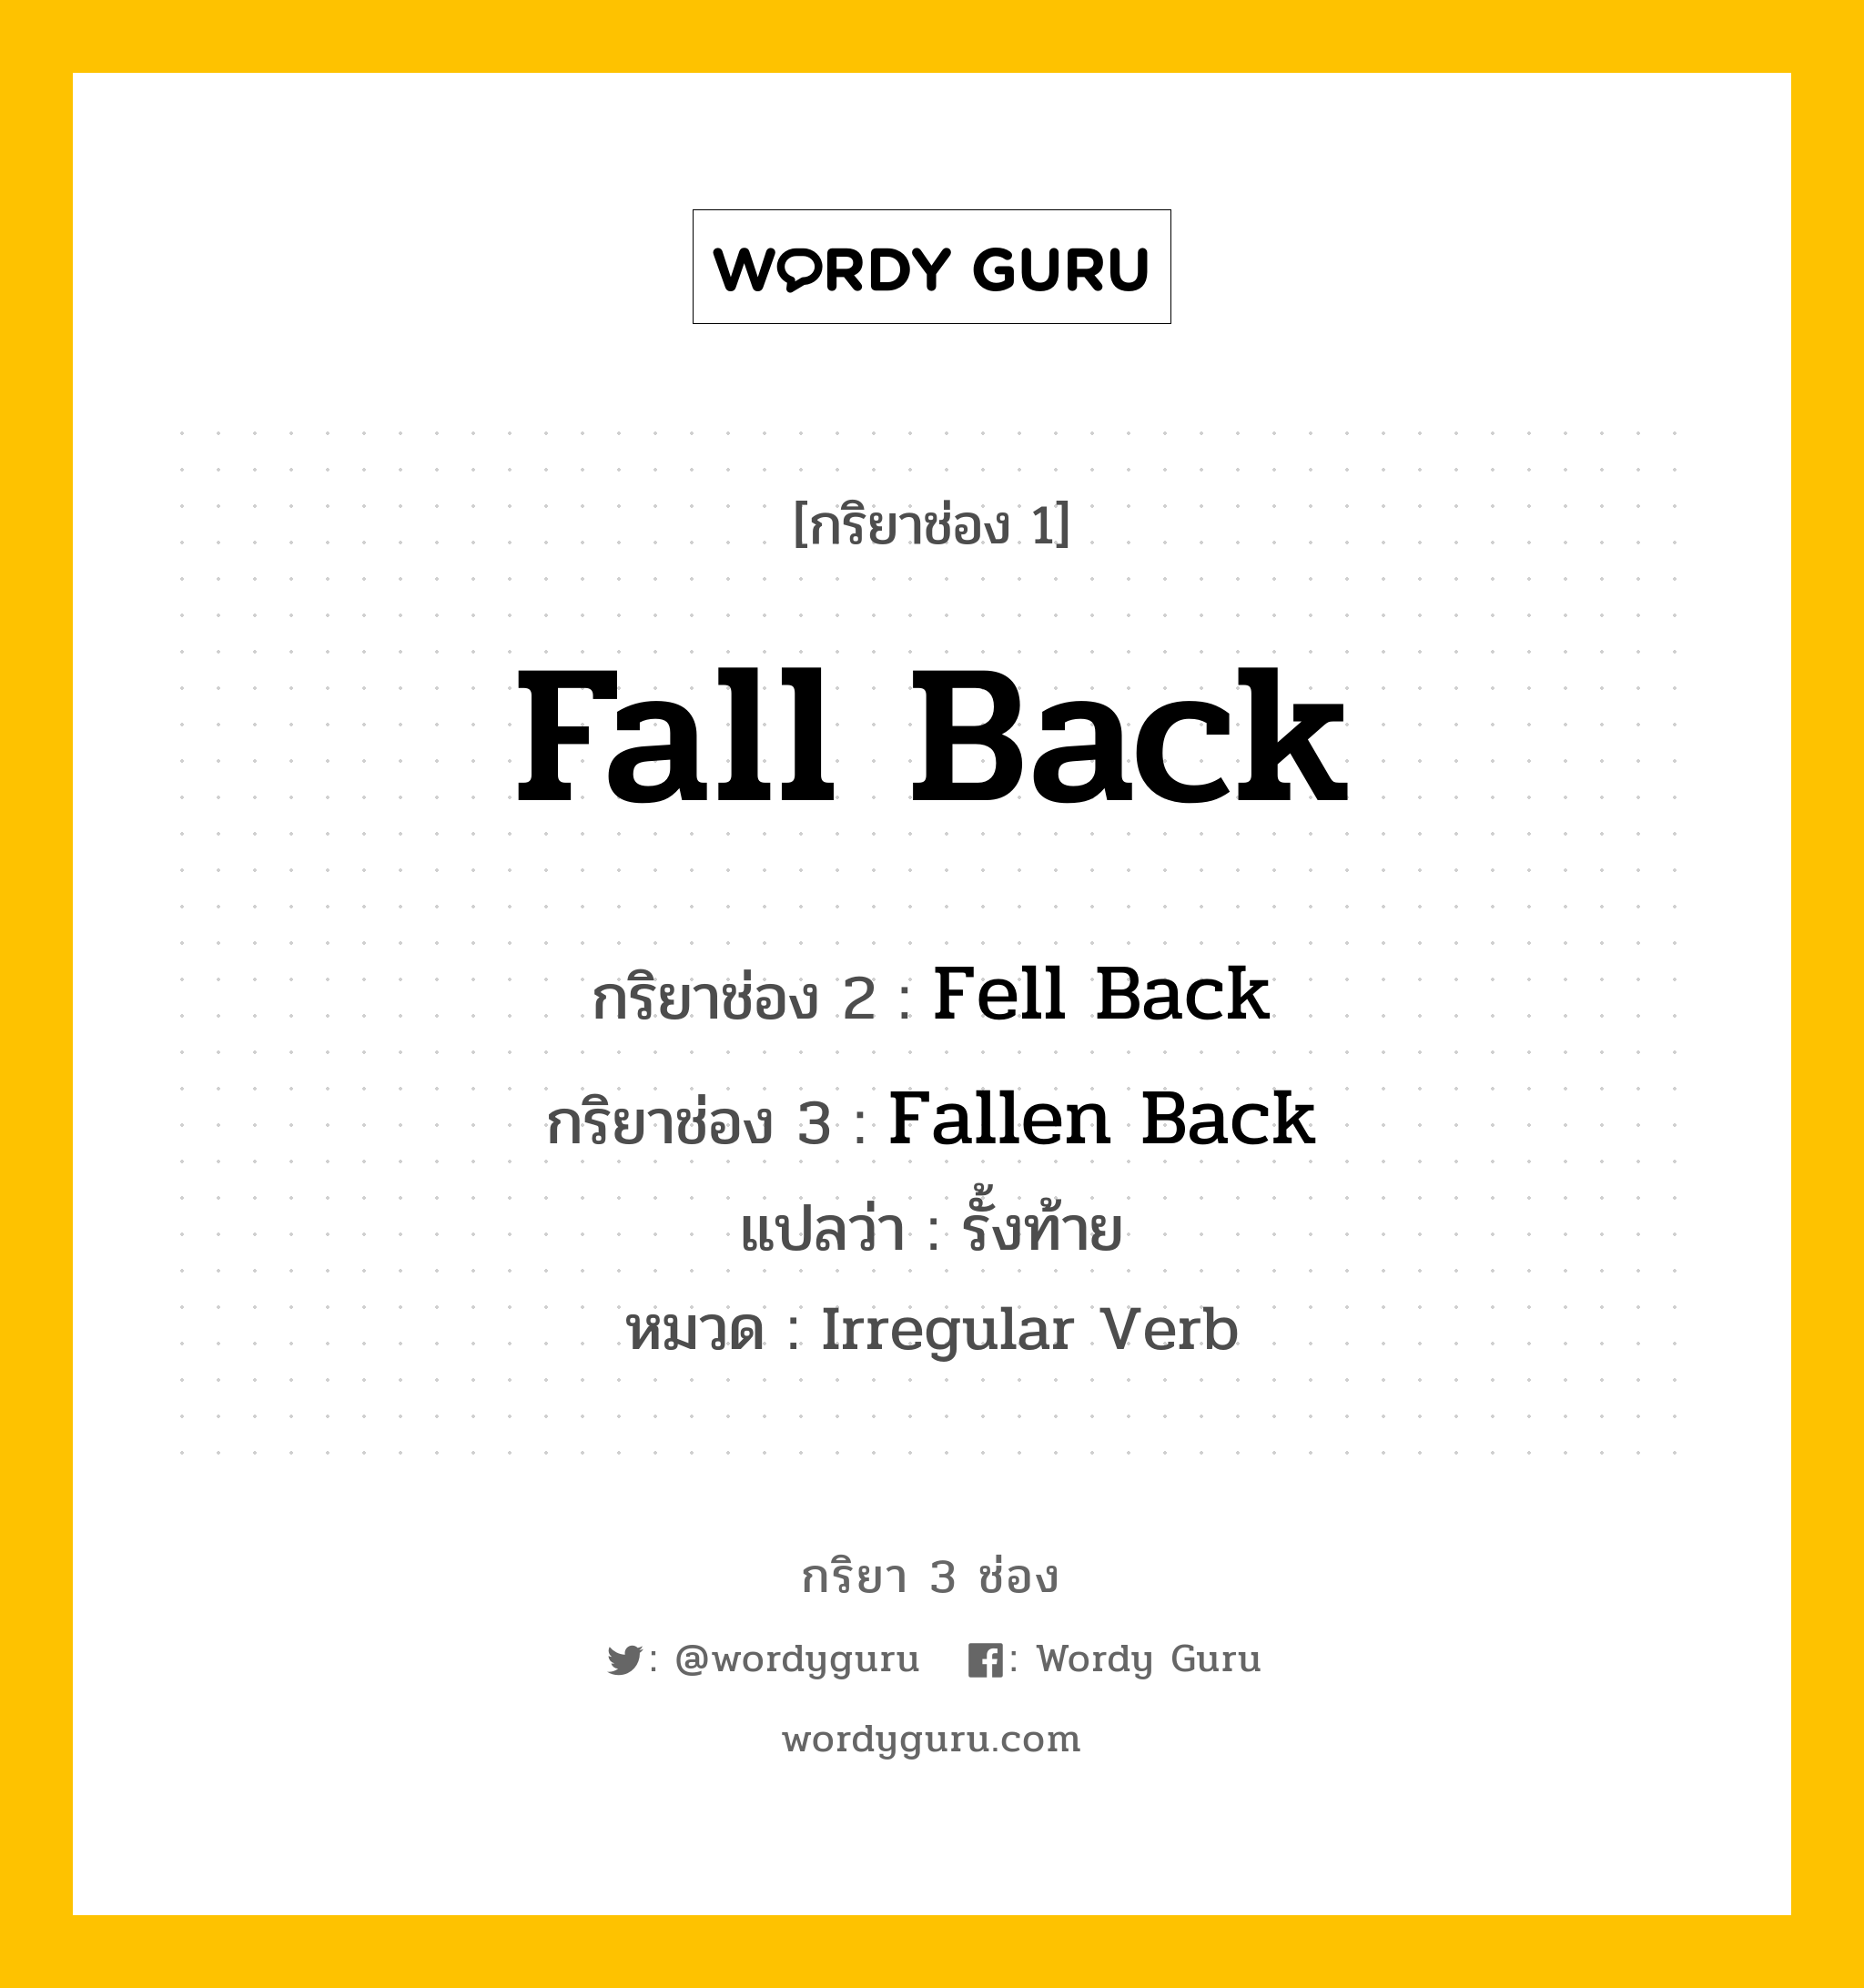 Fall Back มีกริยา 3 ช่องอะไรบ้าง? คำศัพท์ในกลุ่มประเภท Irregular Verb, กริยาช่อง 1 Fall Back กริยาช่อง 2 Fell Back กริยาช่อง 3 Fallen Back แปลว่า รั้งท้าย หมวด Irregular Verb หมวด Irregular Verb